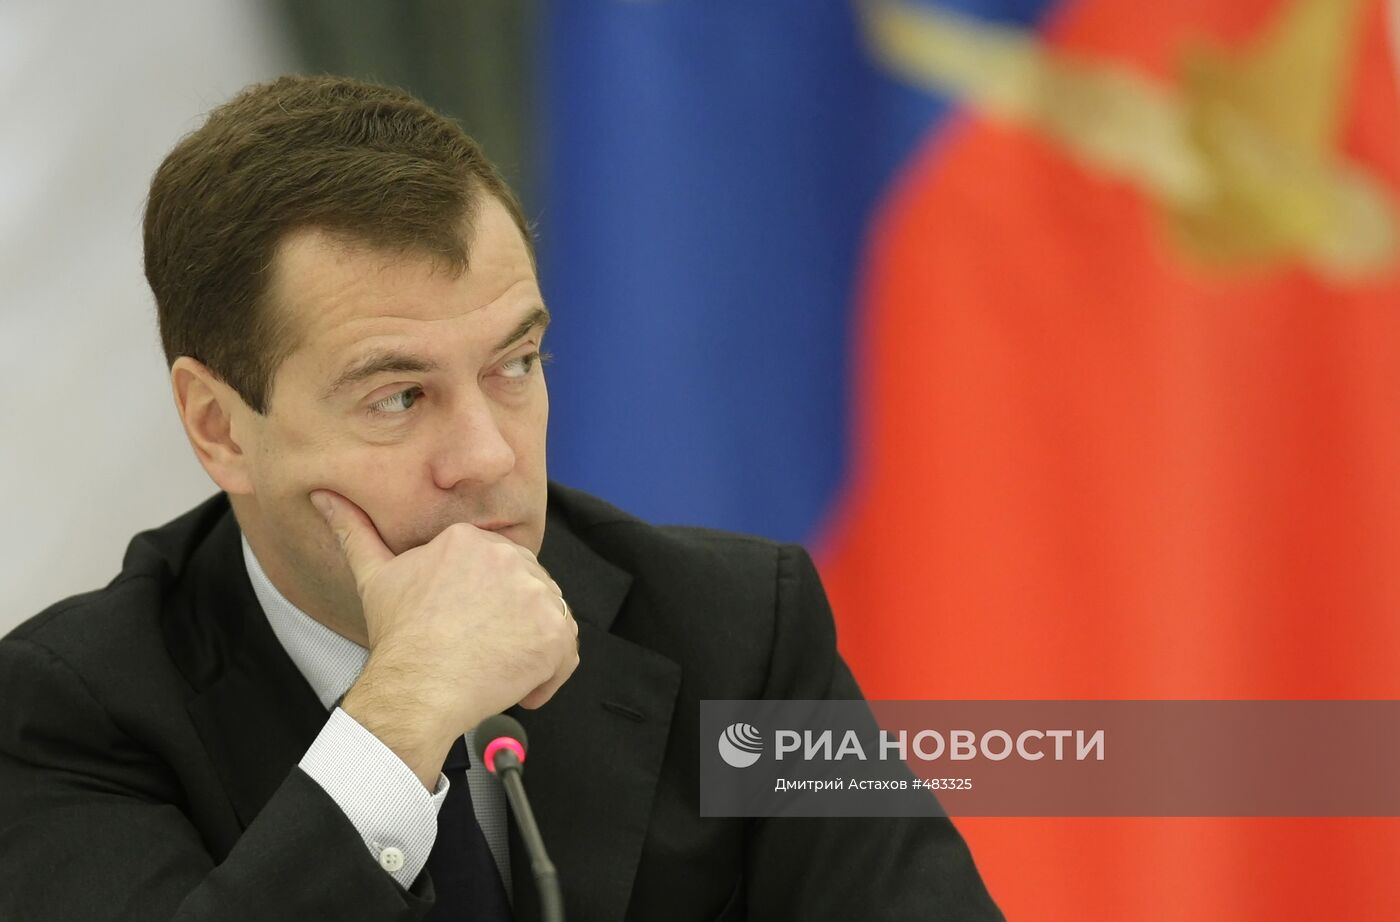 Встреча Д.Медведева с членами предпринимательского сообщества